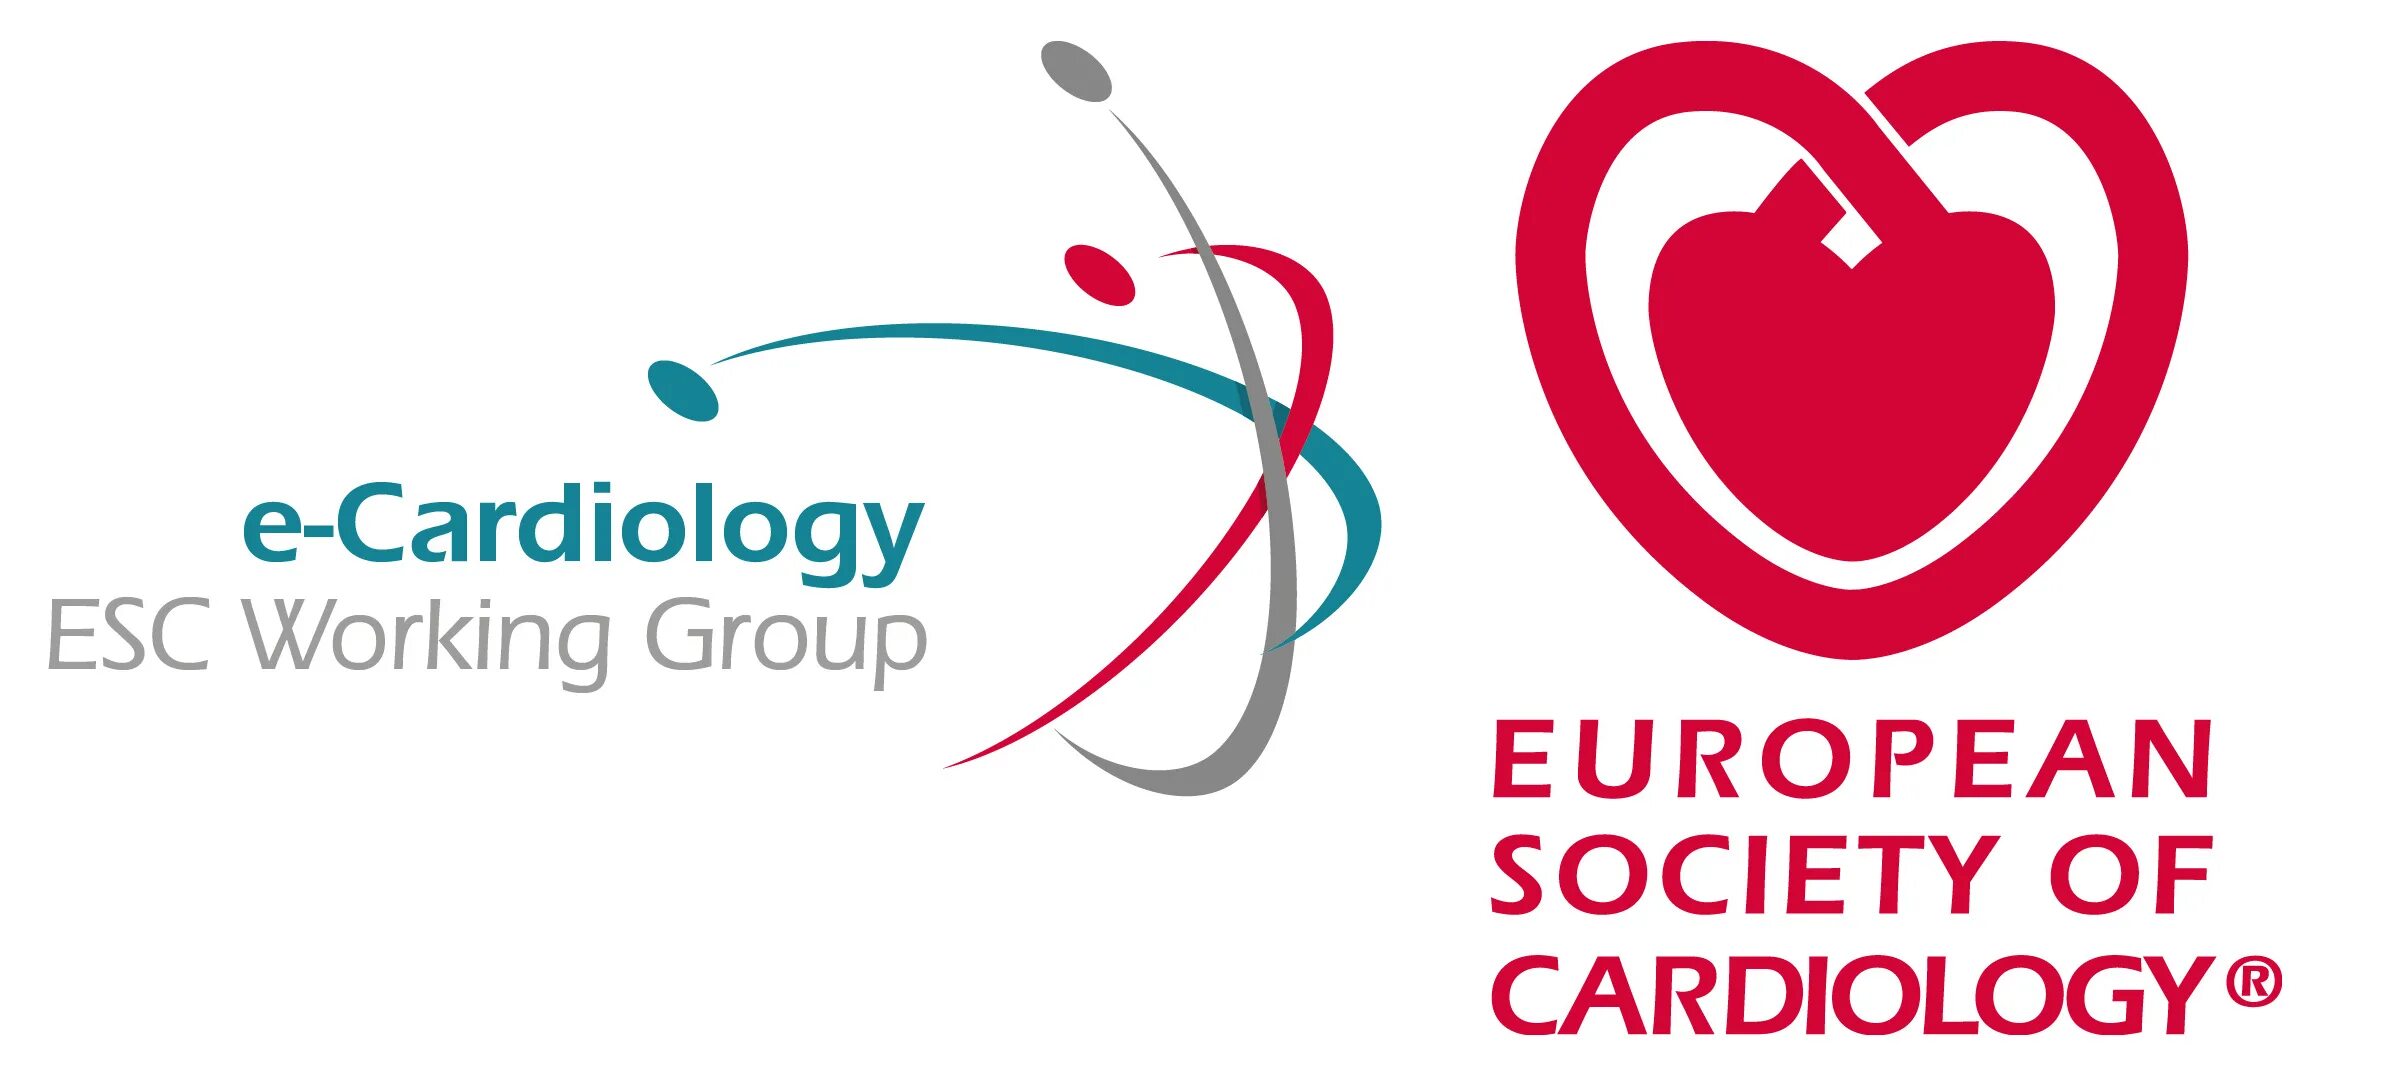 European society. Европейское кардиологическое общество. Европейское сообщество кардиологов. Европейская Ассоциация кардиологов. Эмблема европейского общества кардиологов.